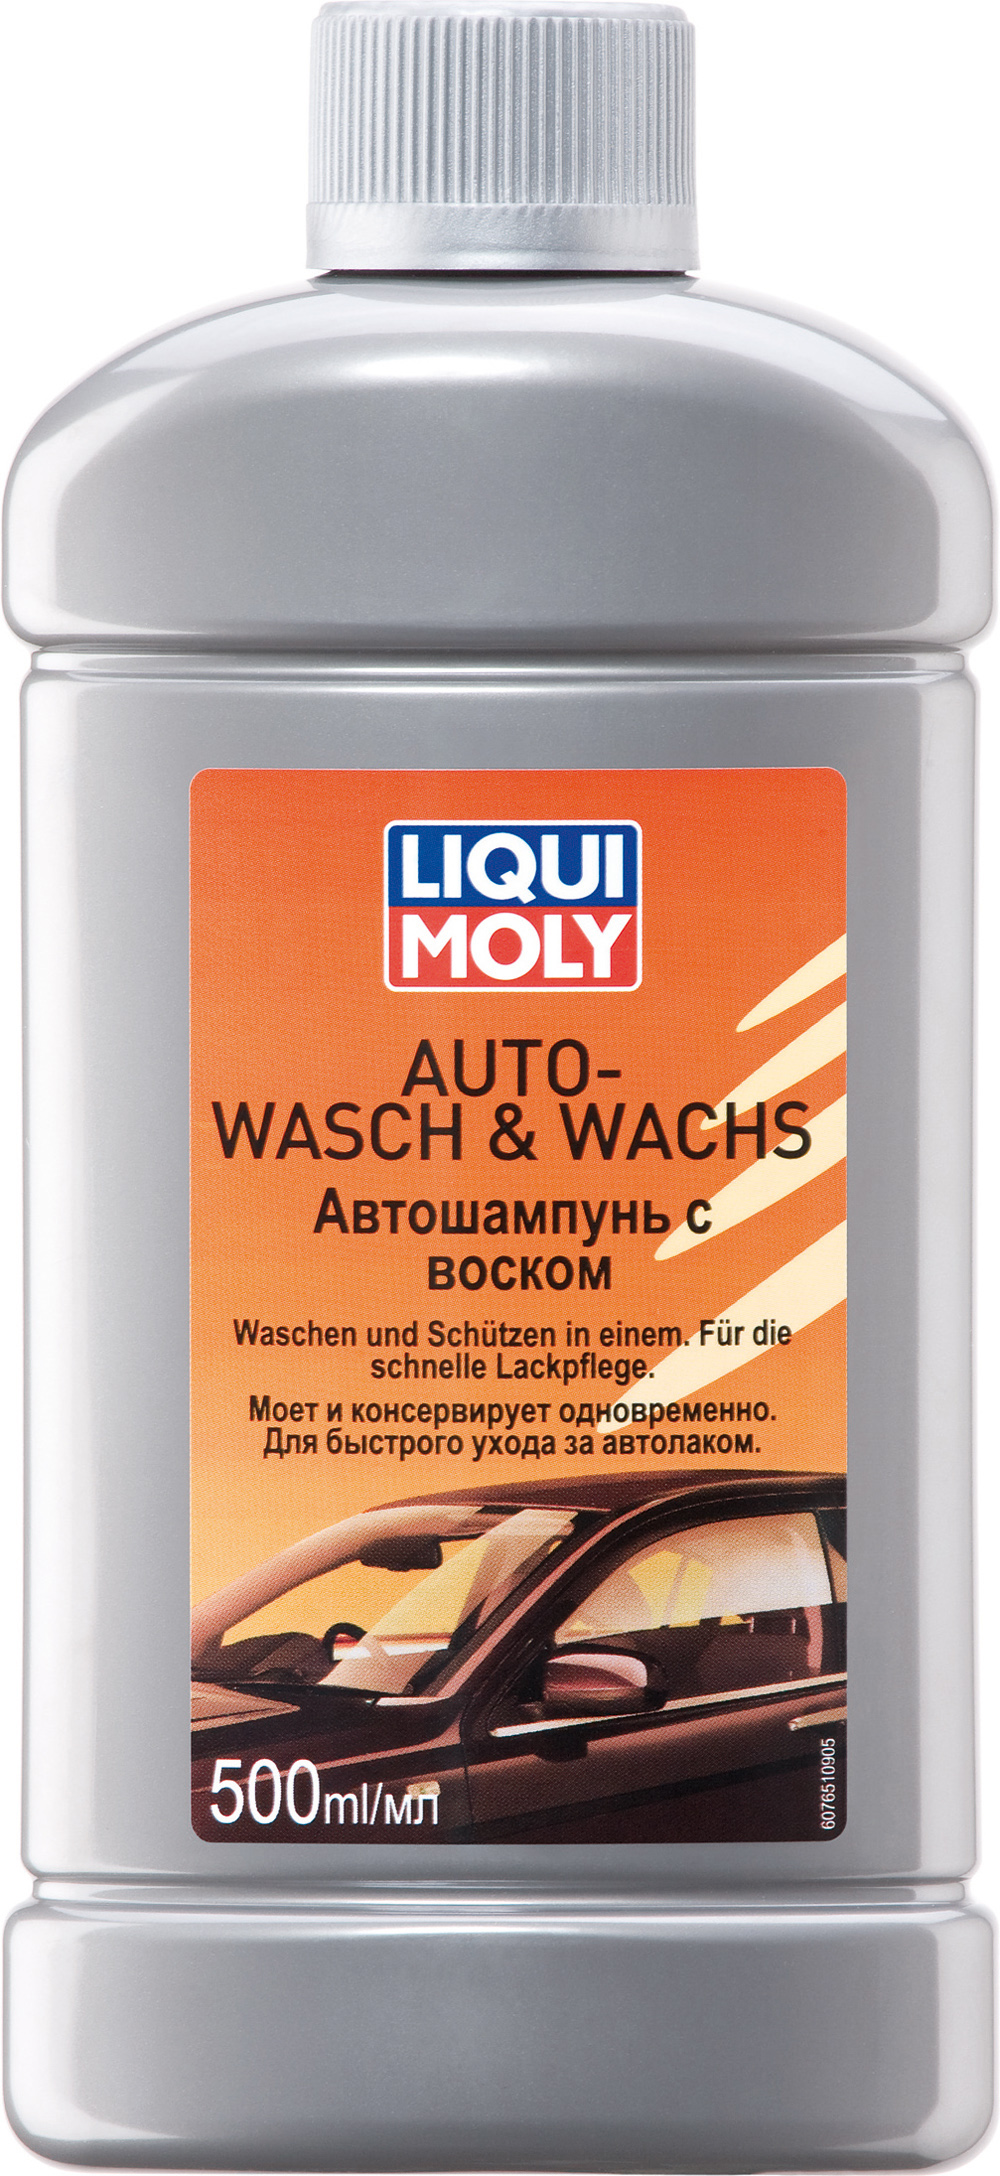 Автомобильный шампунь с воском LIQUI MOLY Auto-Wasch & Wachs (0,5 литра)